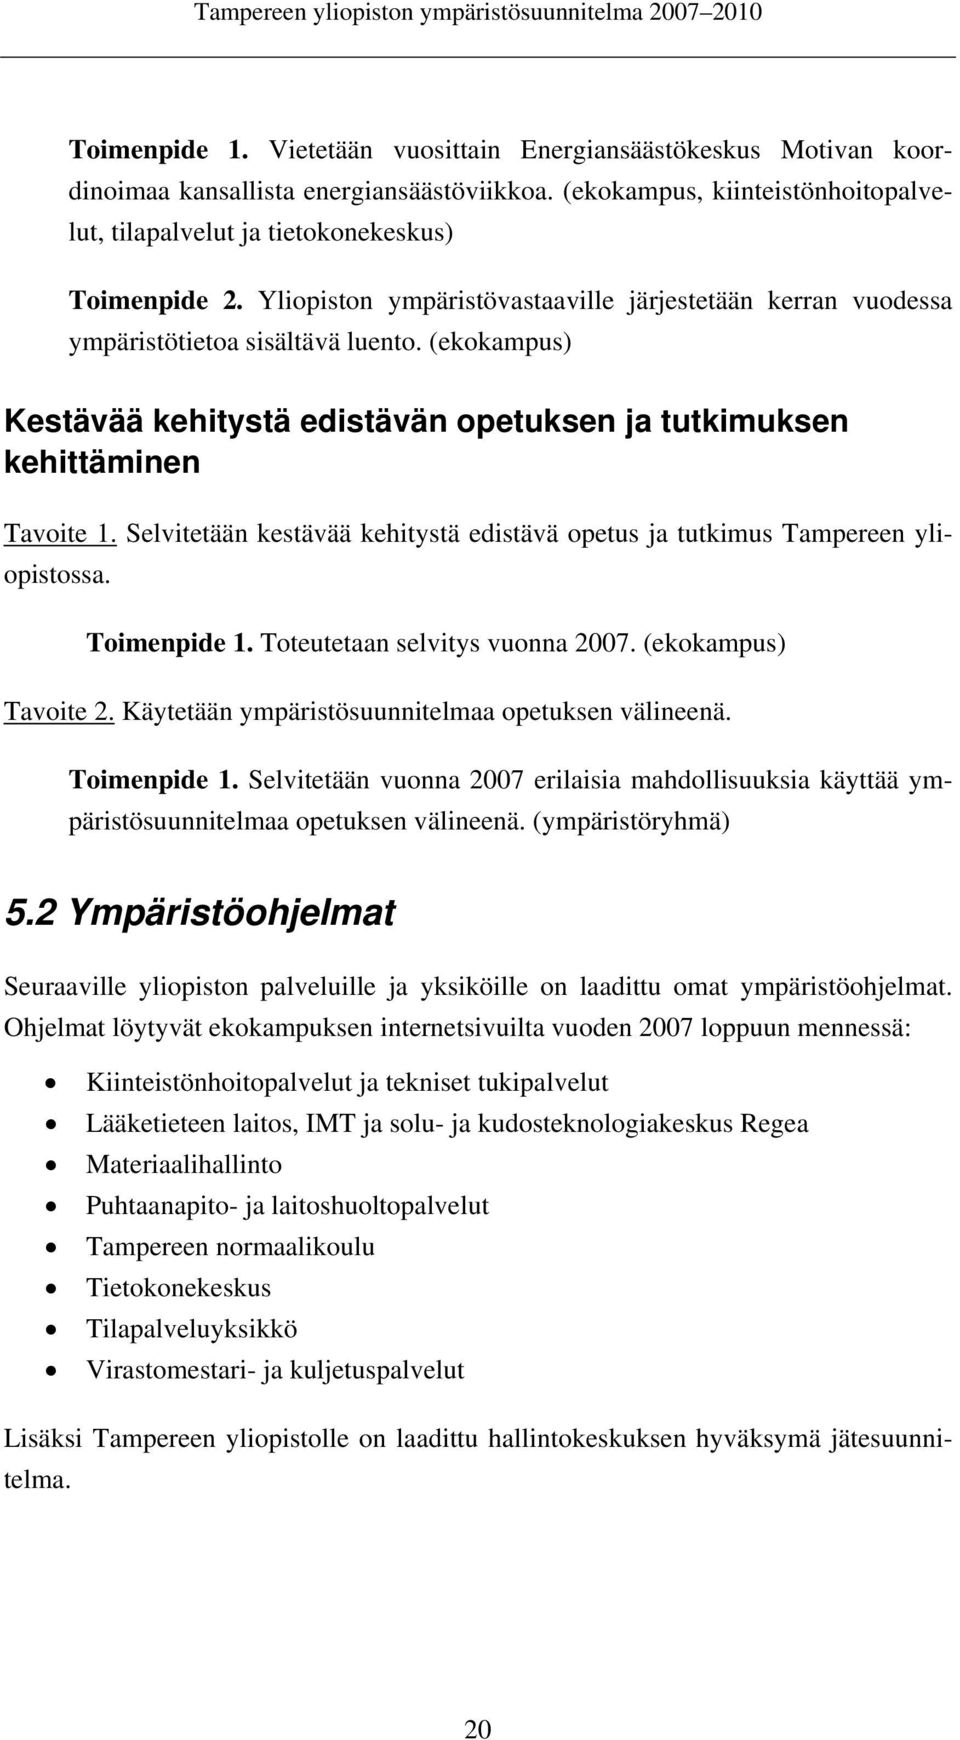 Selvitetään kestävää kehitystä edistävä opetus ja tutkimus Tampereen yliopistossa. Toimenpide 1. Toteutetaan selvitys vuonna 2007. (ekokampus) Tavoite 2.